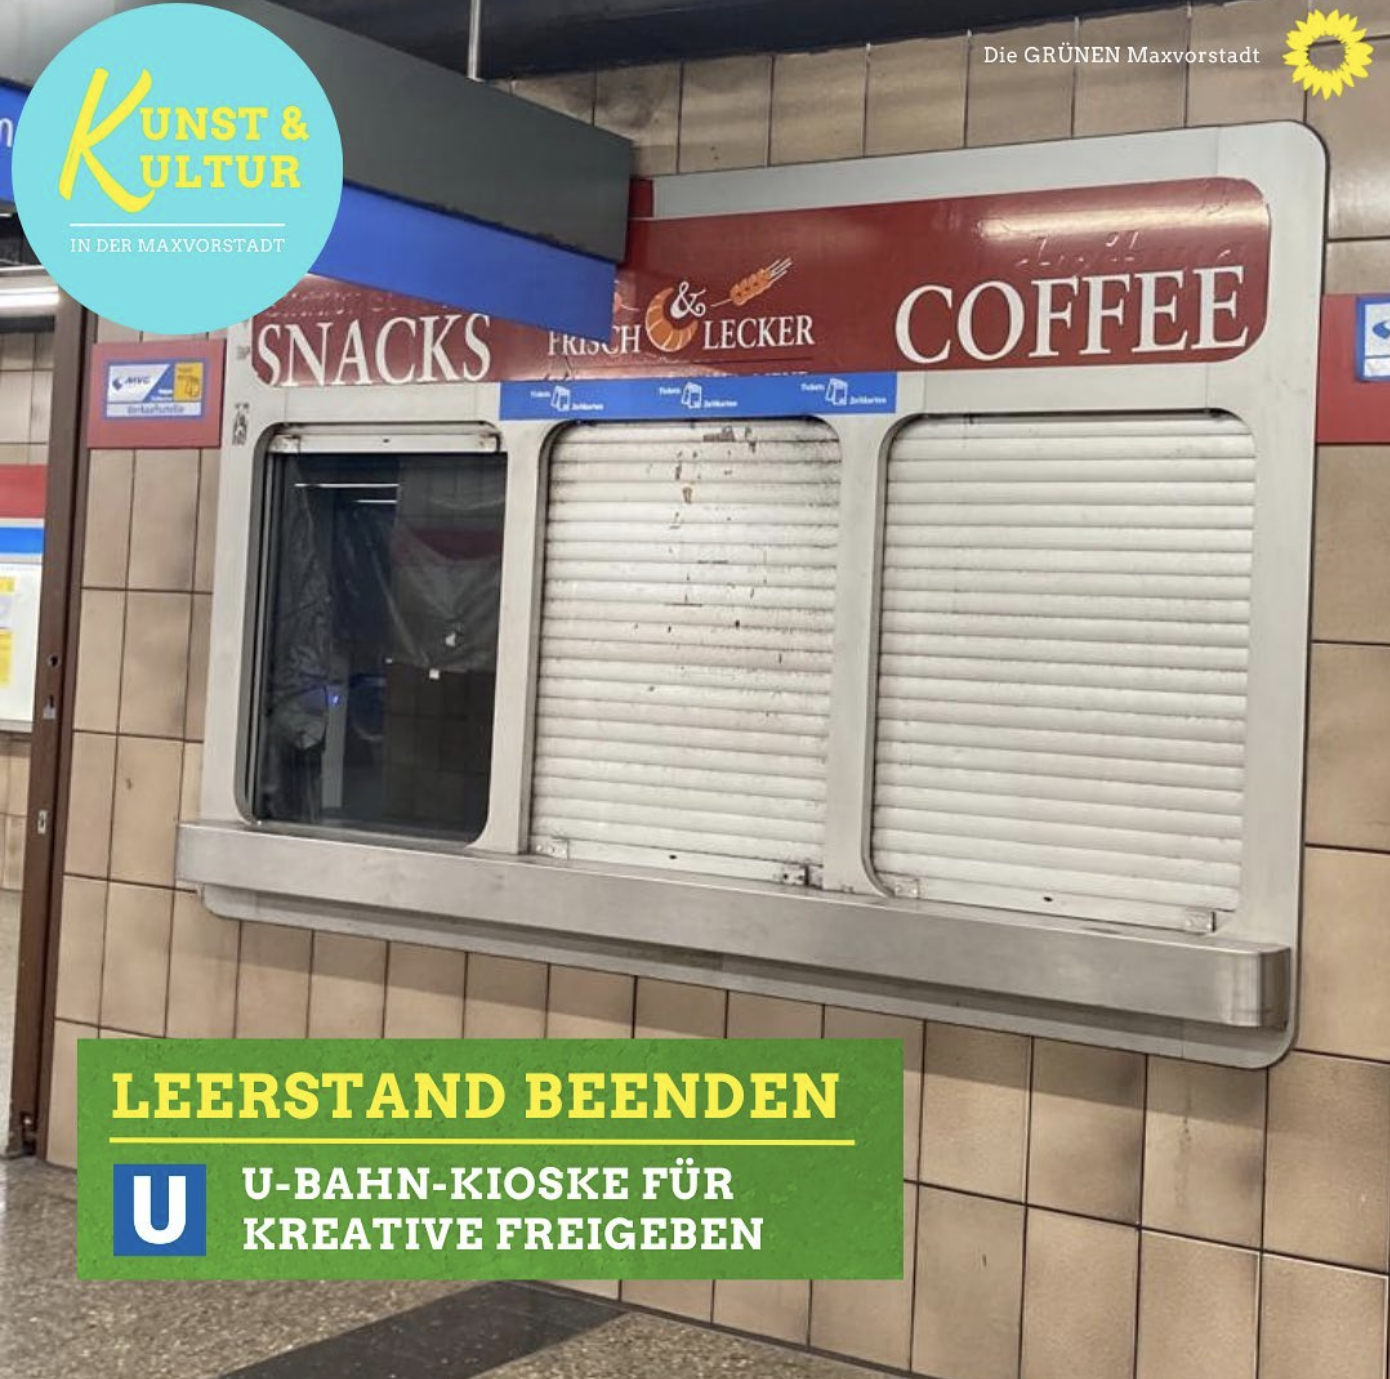 Antrag: Wiederbelebung von leerstehenden Kiosk-Flächen in den U-Bahnhöfen der Maxvorstadt